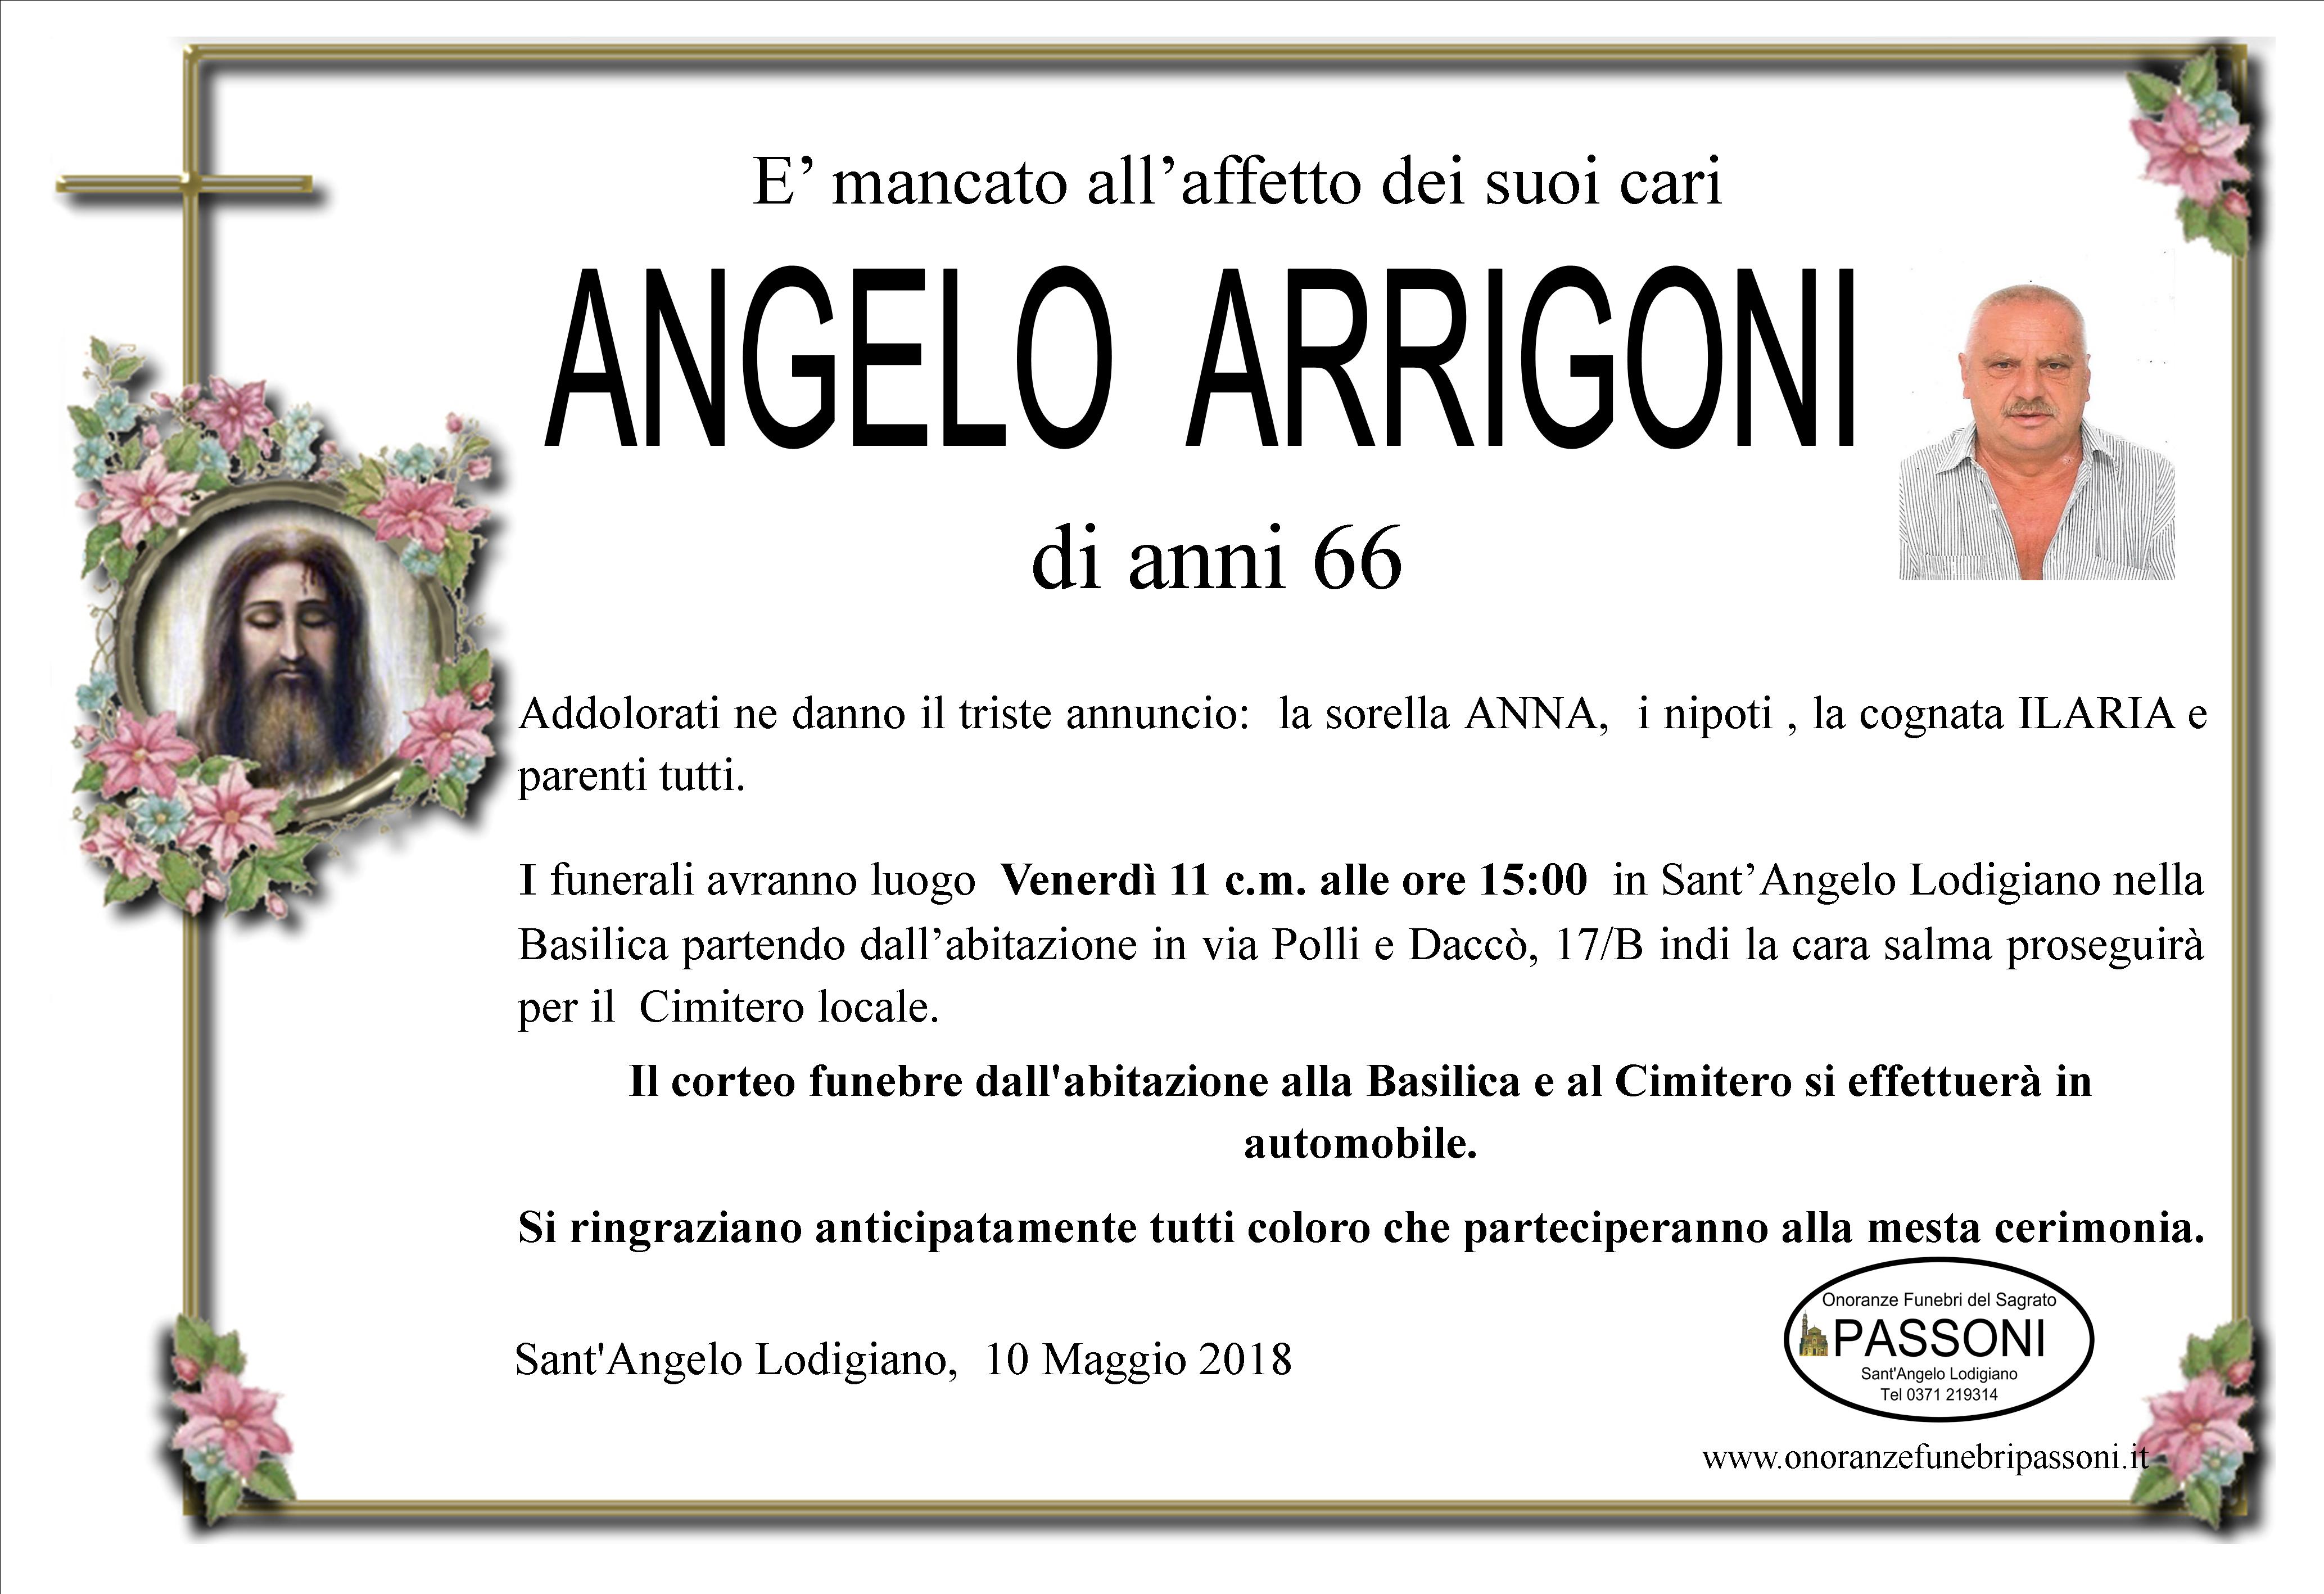 ANGELO  ARRIGONI